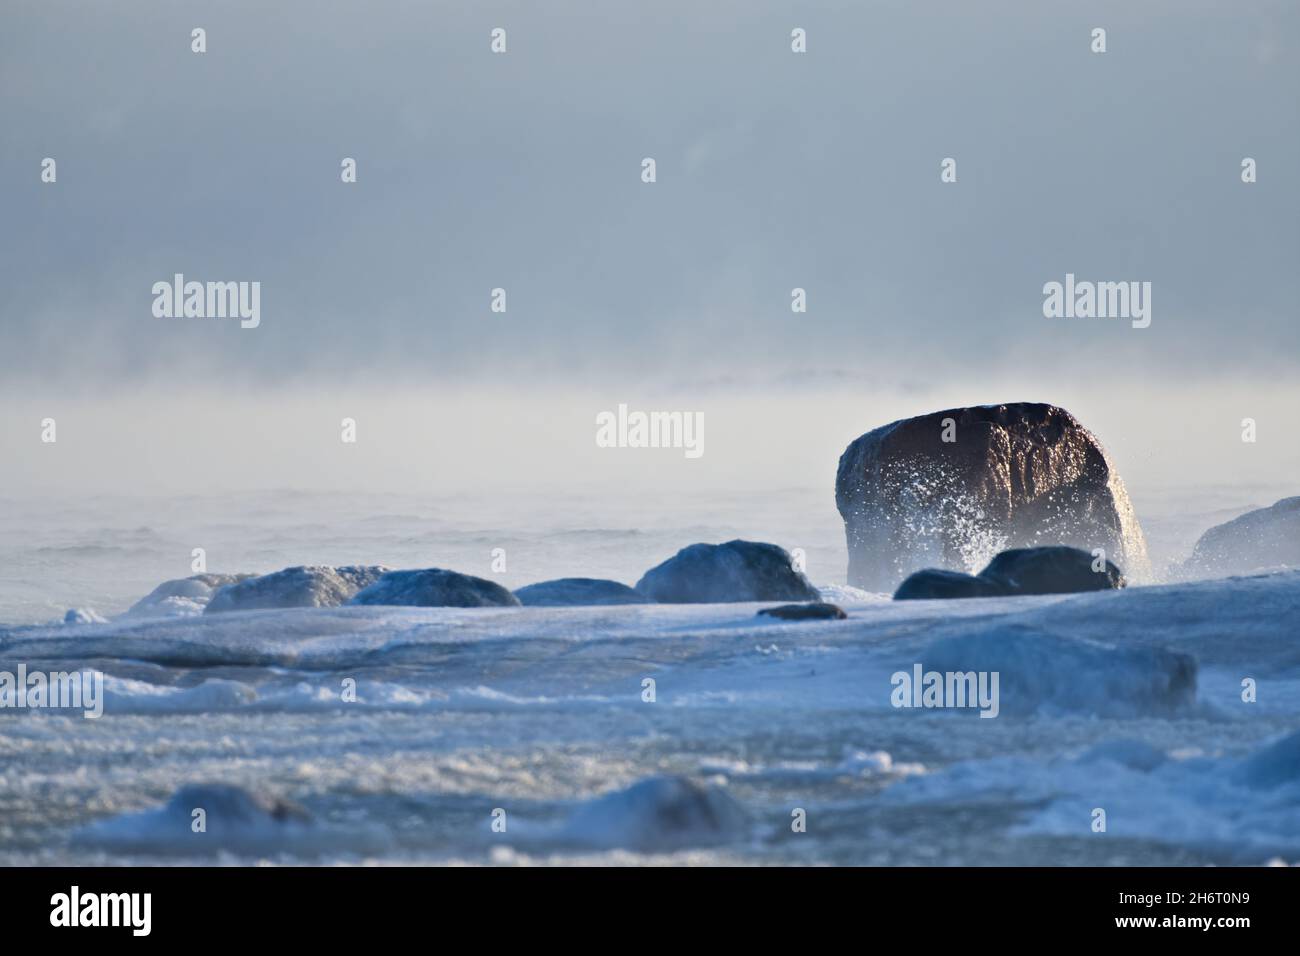 Roche couverte de glace par la mer Baltique qui sur le point de geler avec des éclaboussures d'eau contre les rochers à Helsinki, Finlande, le 14 janvier 2021. Banque D'Images